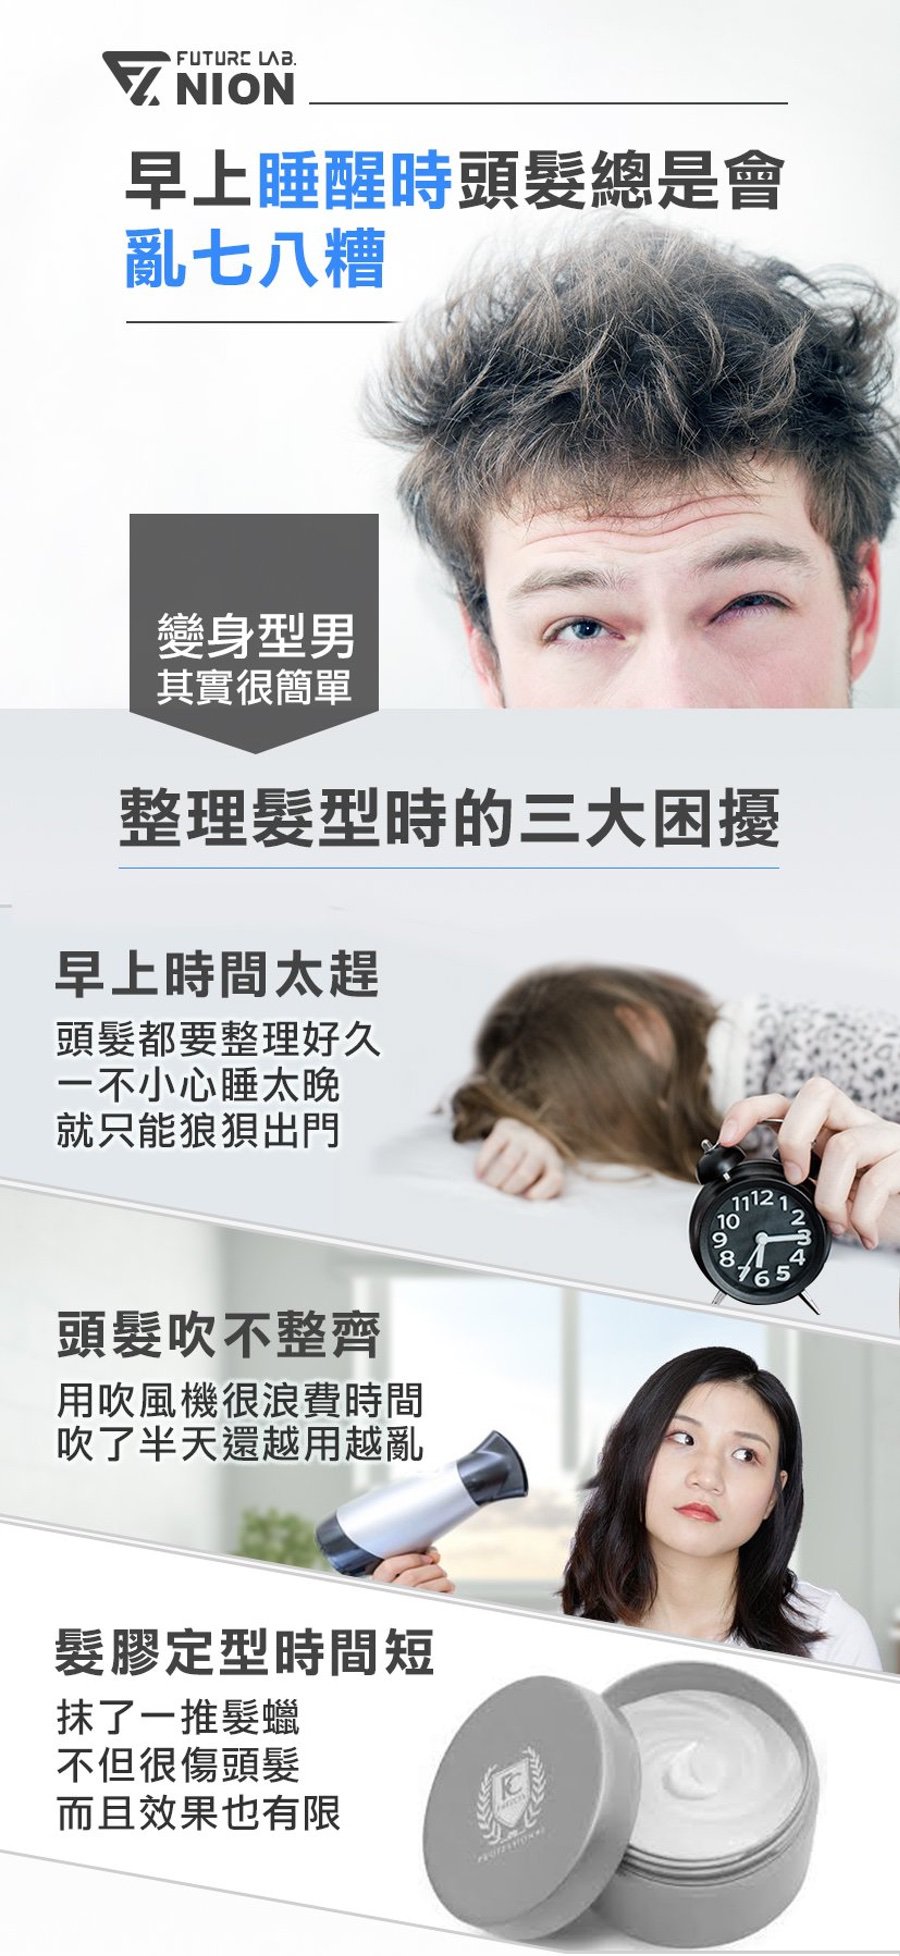 台灣 Future Lab 未來實驗室 Nion 負離子燙髮梳